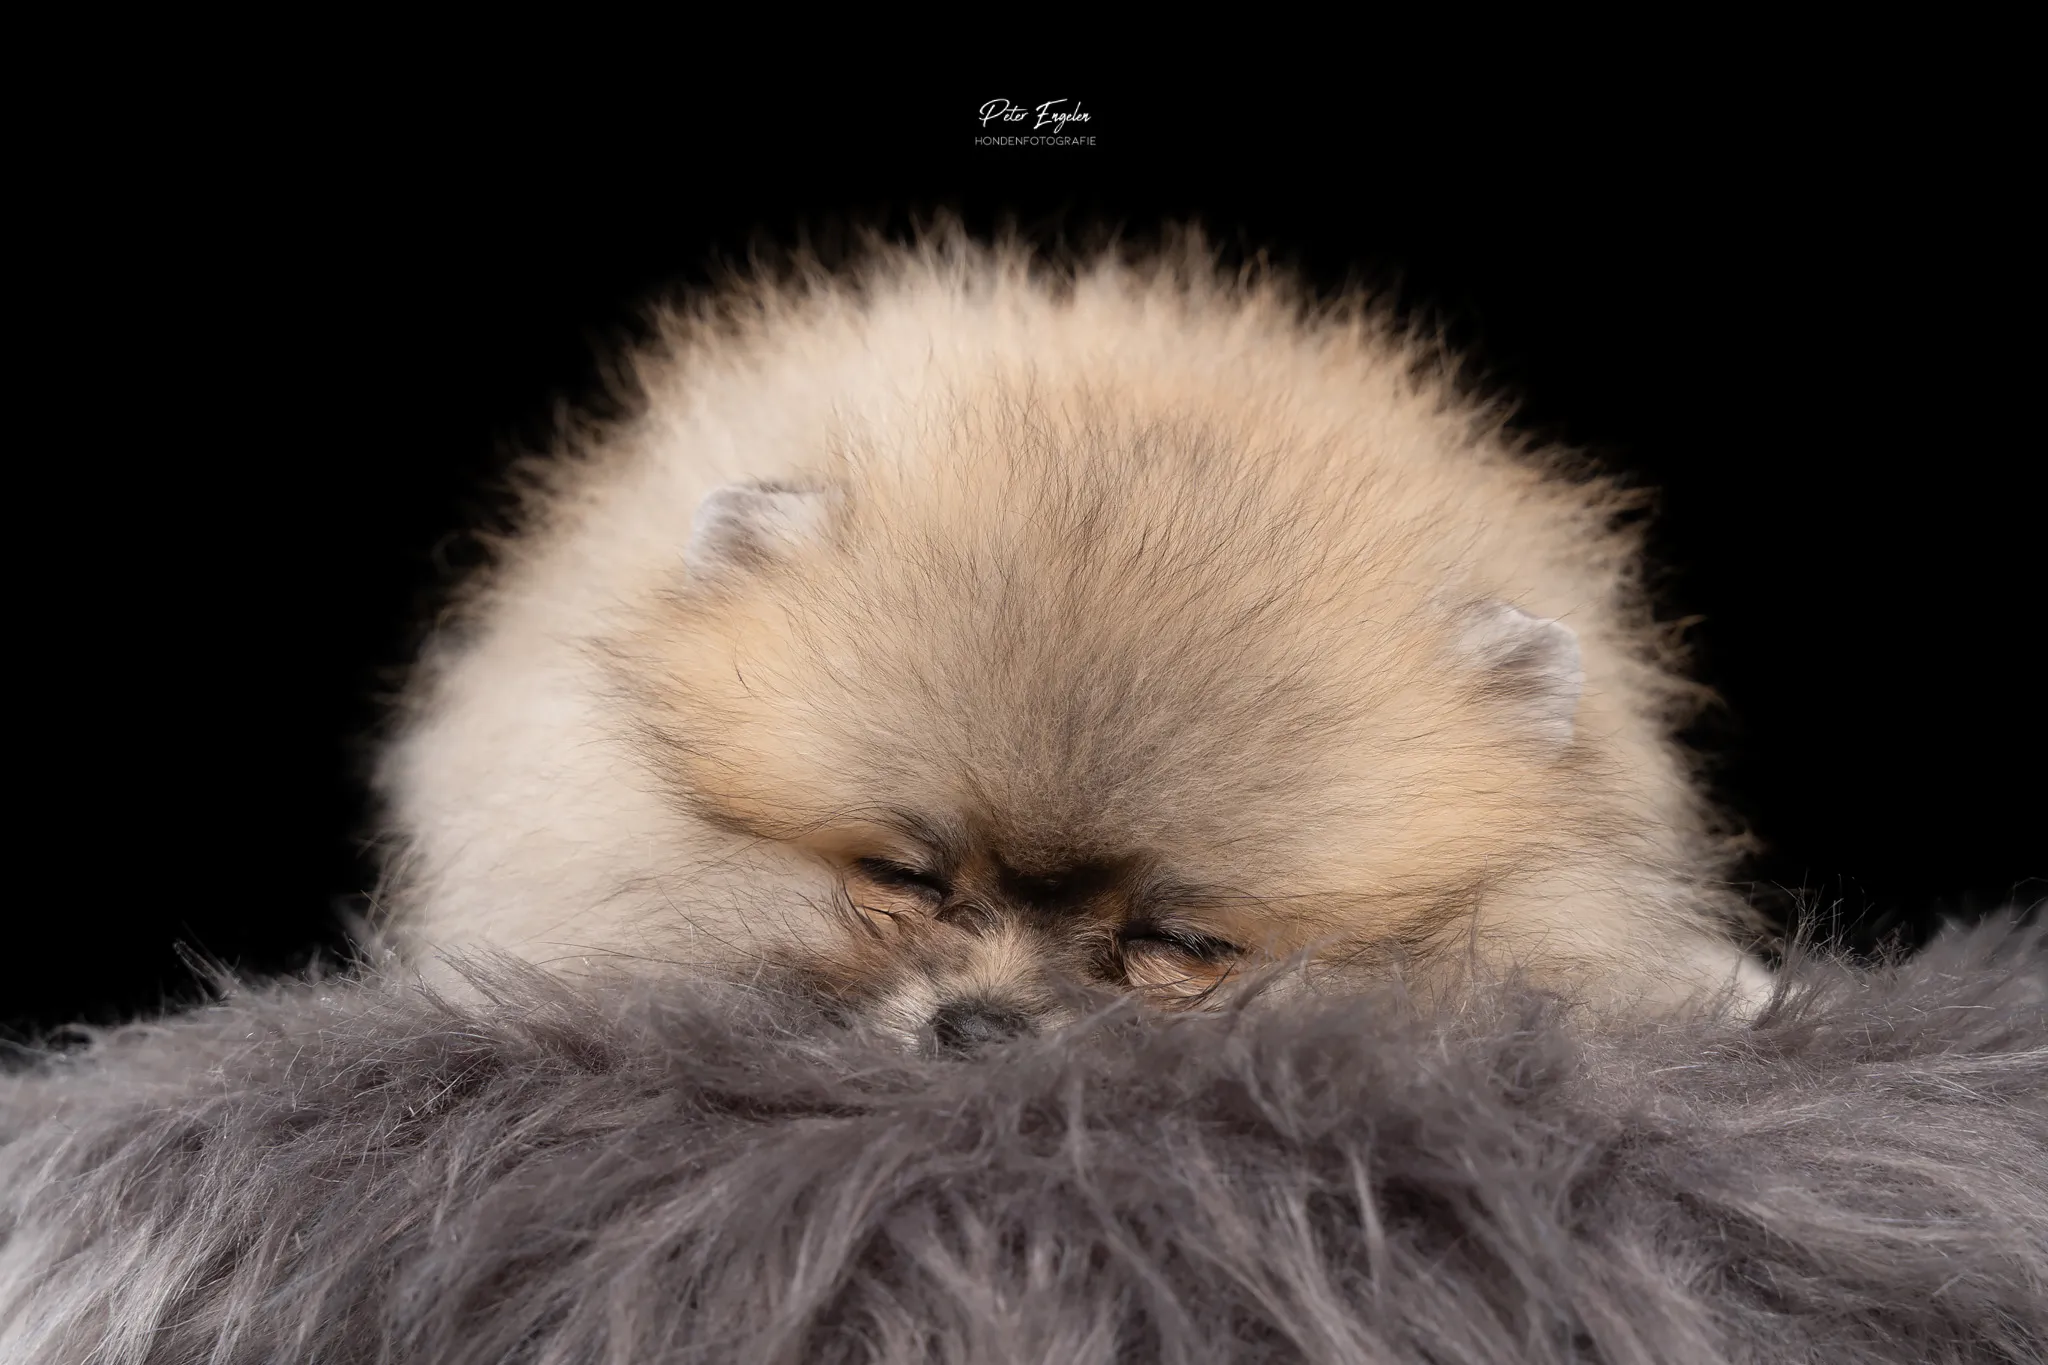 Een Pomeranian pup die bijna in slaap valt op een stoeltje tijdens een Portraitshoot in de fotostudio.